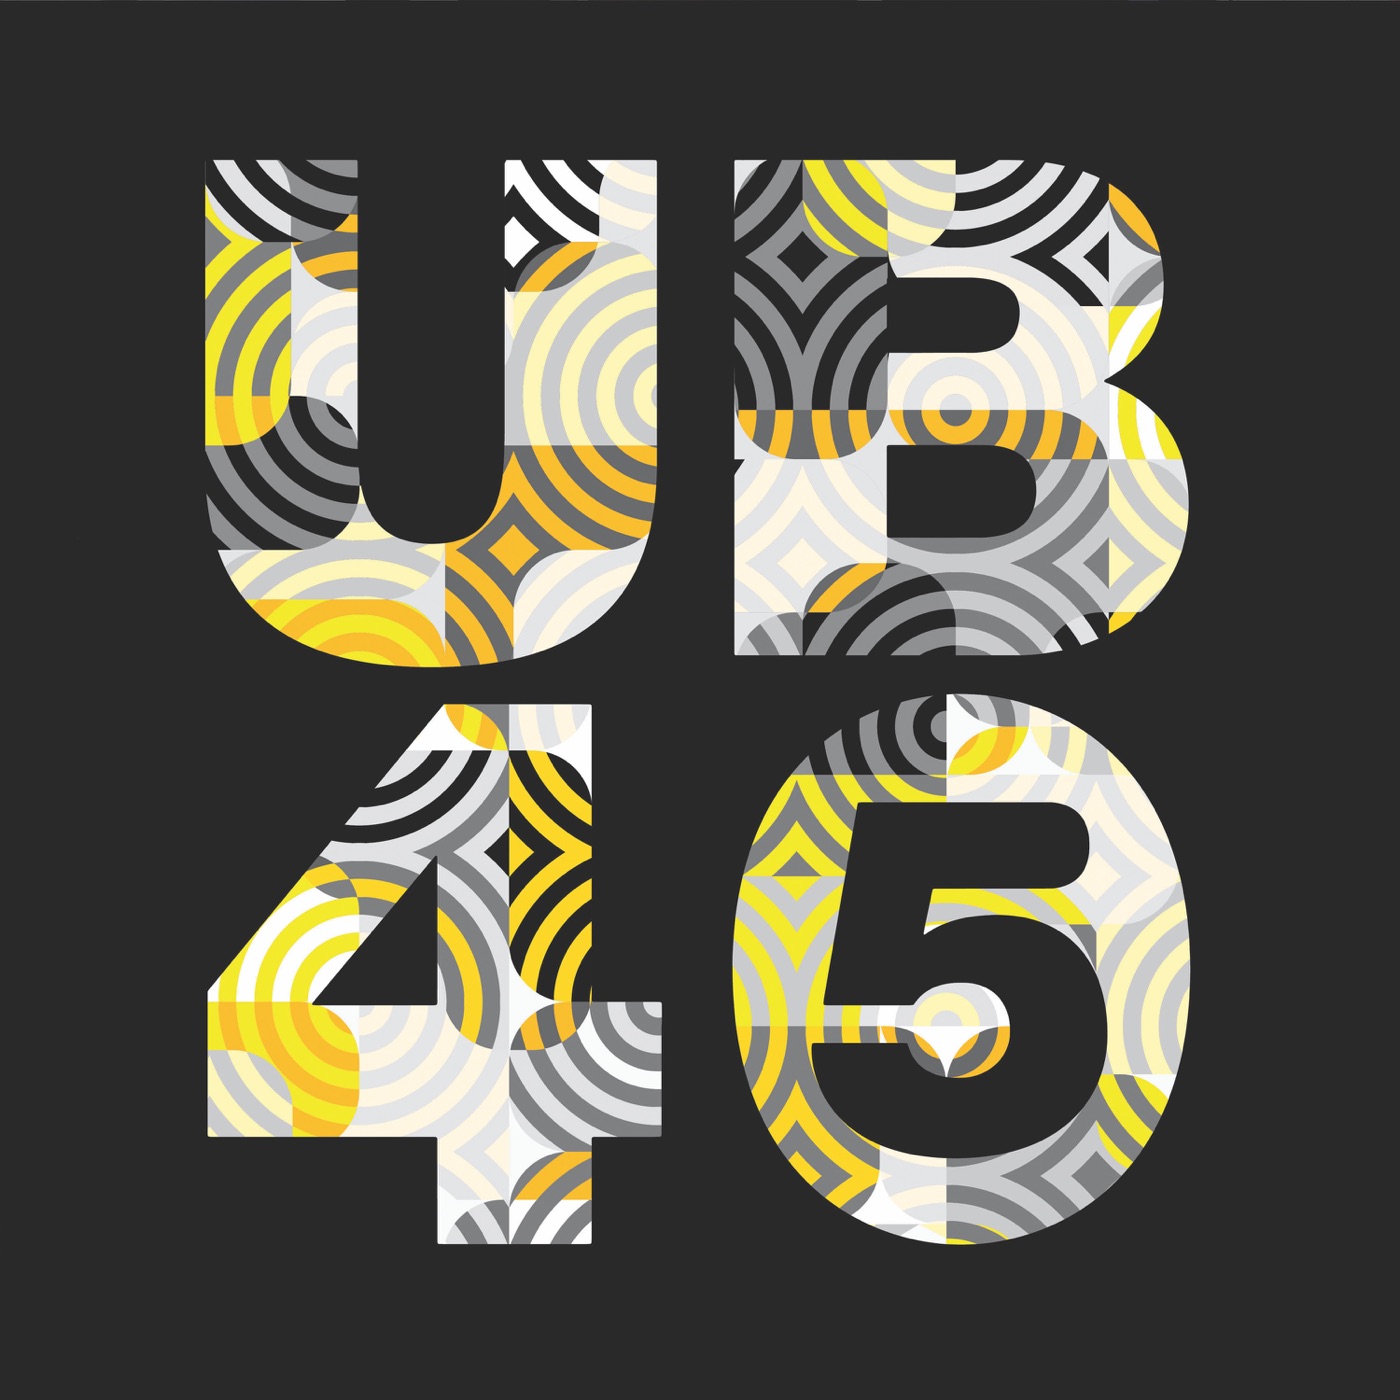 UB45 by UB40